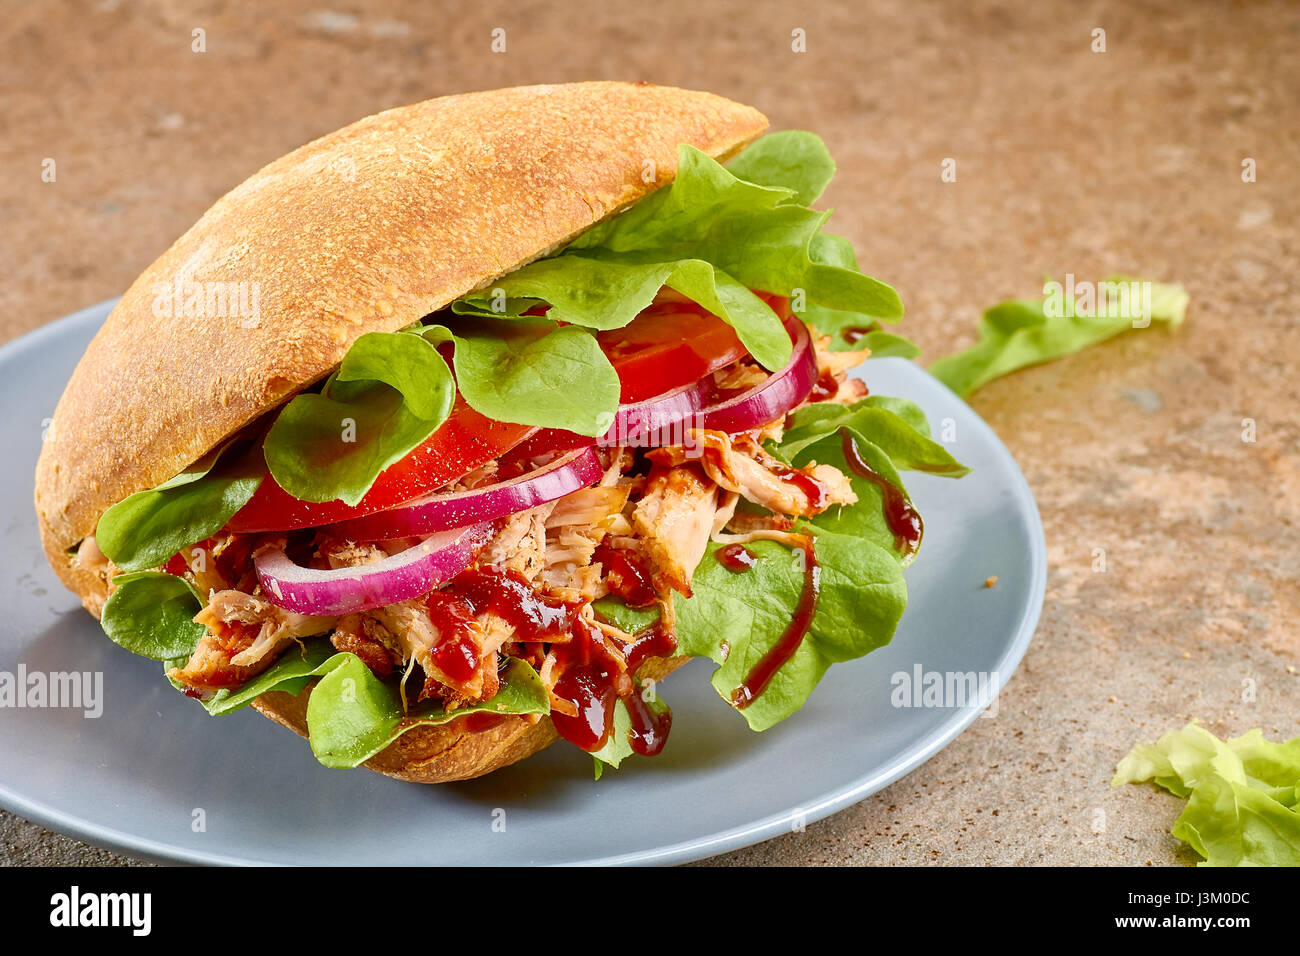 Sandwich mit zog Schweinefleisch, Tomaten und Salat auf blau Teller Stockfoto